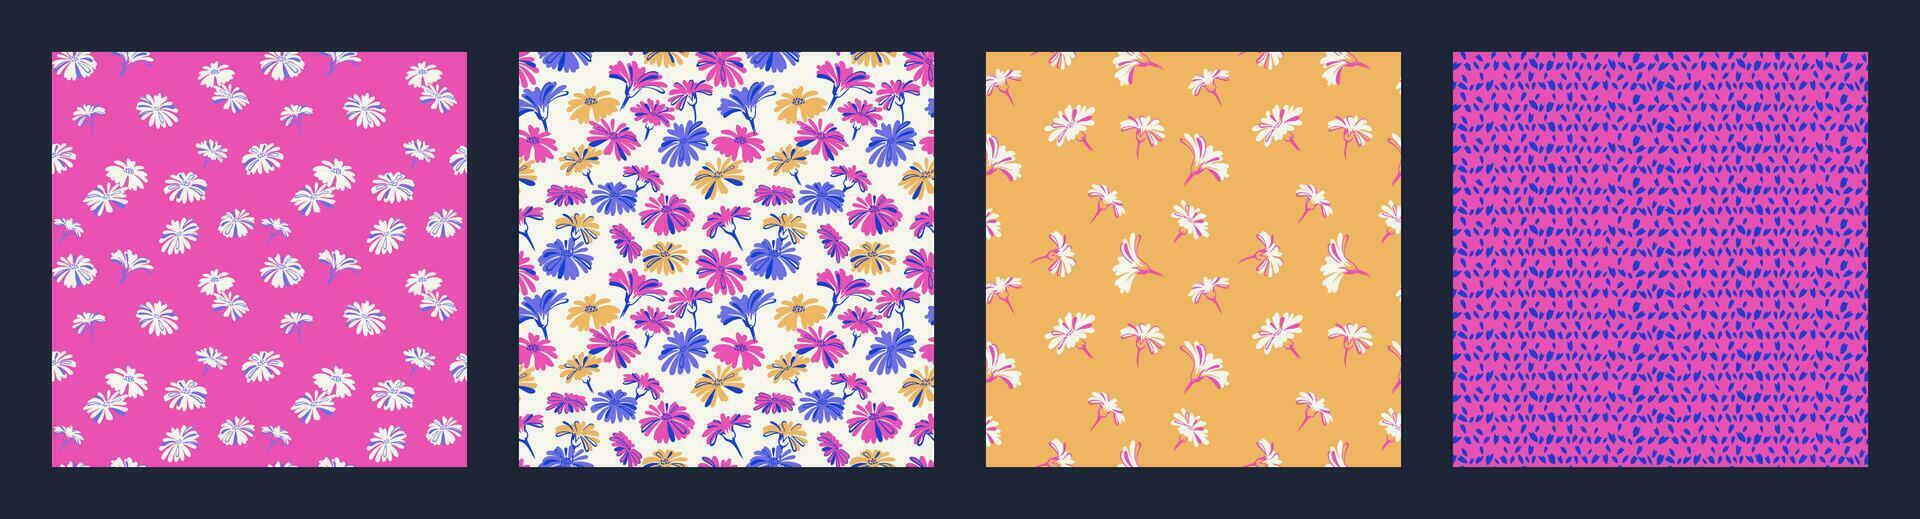 collage enkel kreativ blommig och knoppar, fläckar, prickar, droppar, rader sömlös mönster. vektor hand dragen skiss. ljus rosa gul blå enkel blommor uppsättning skriva ut. design för tyg, mode, textil-